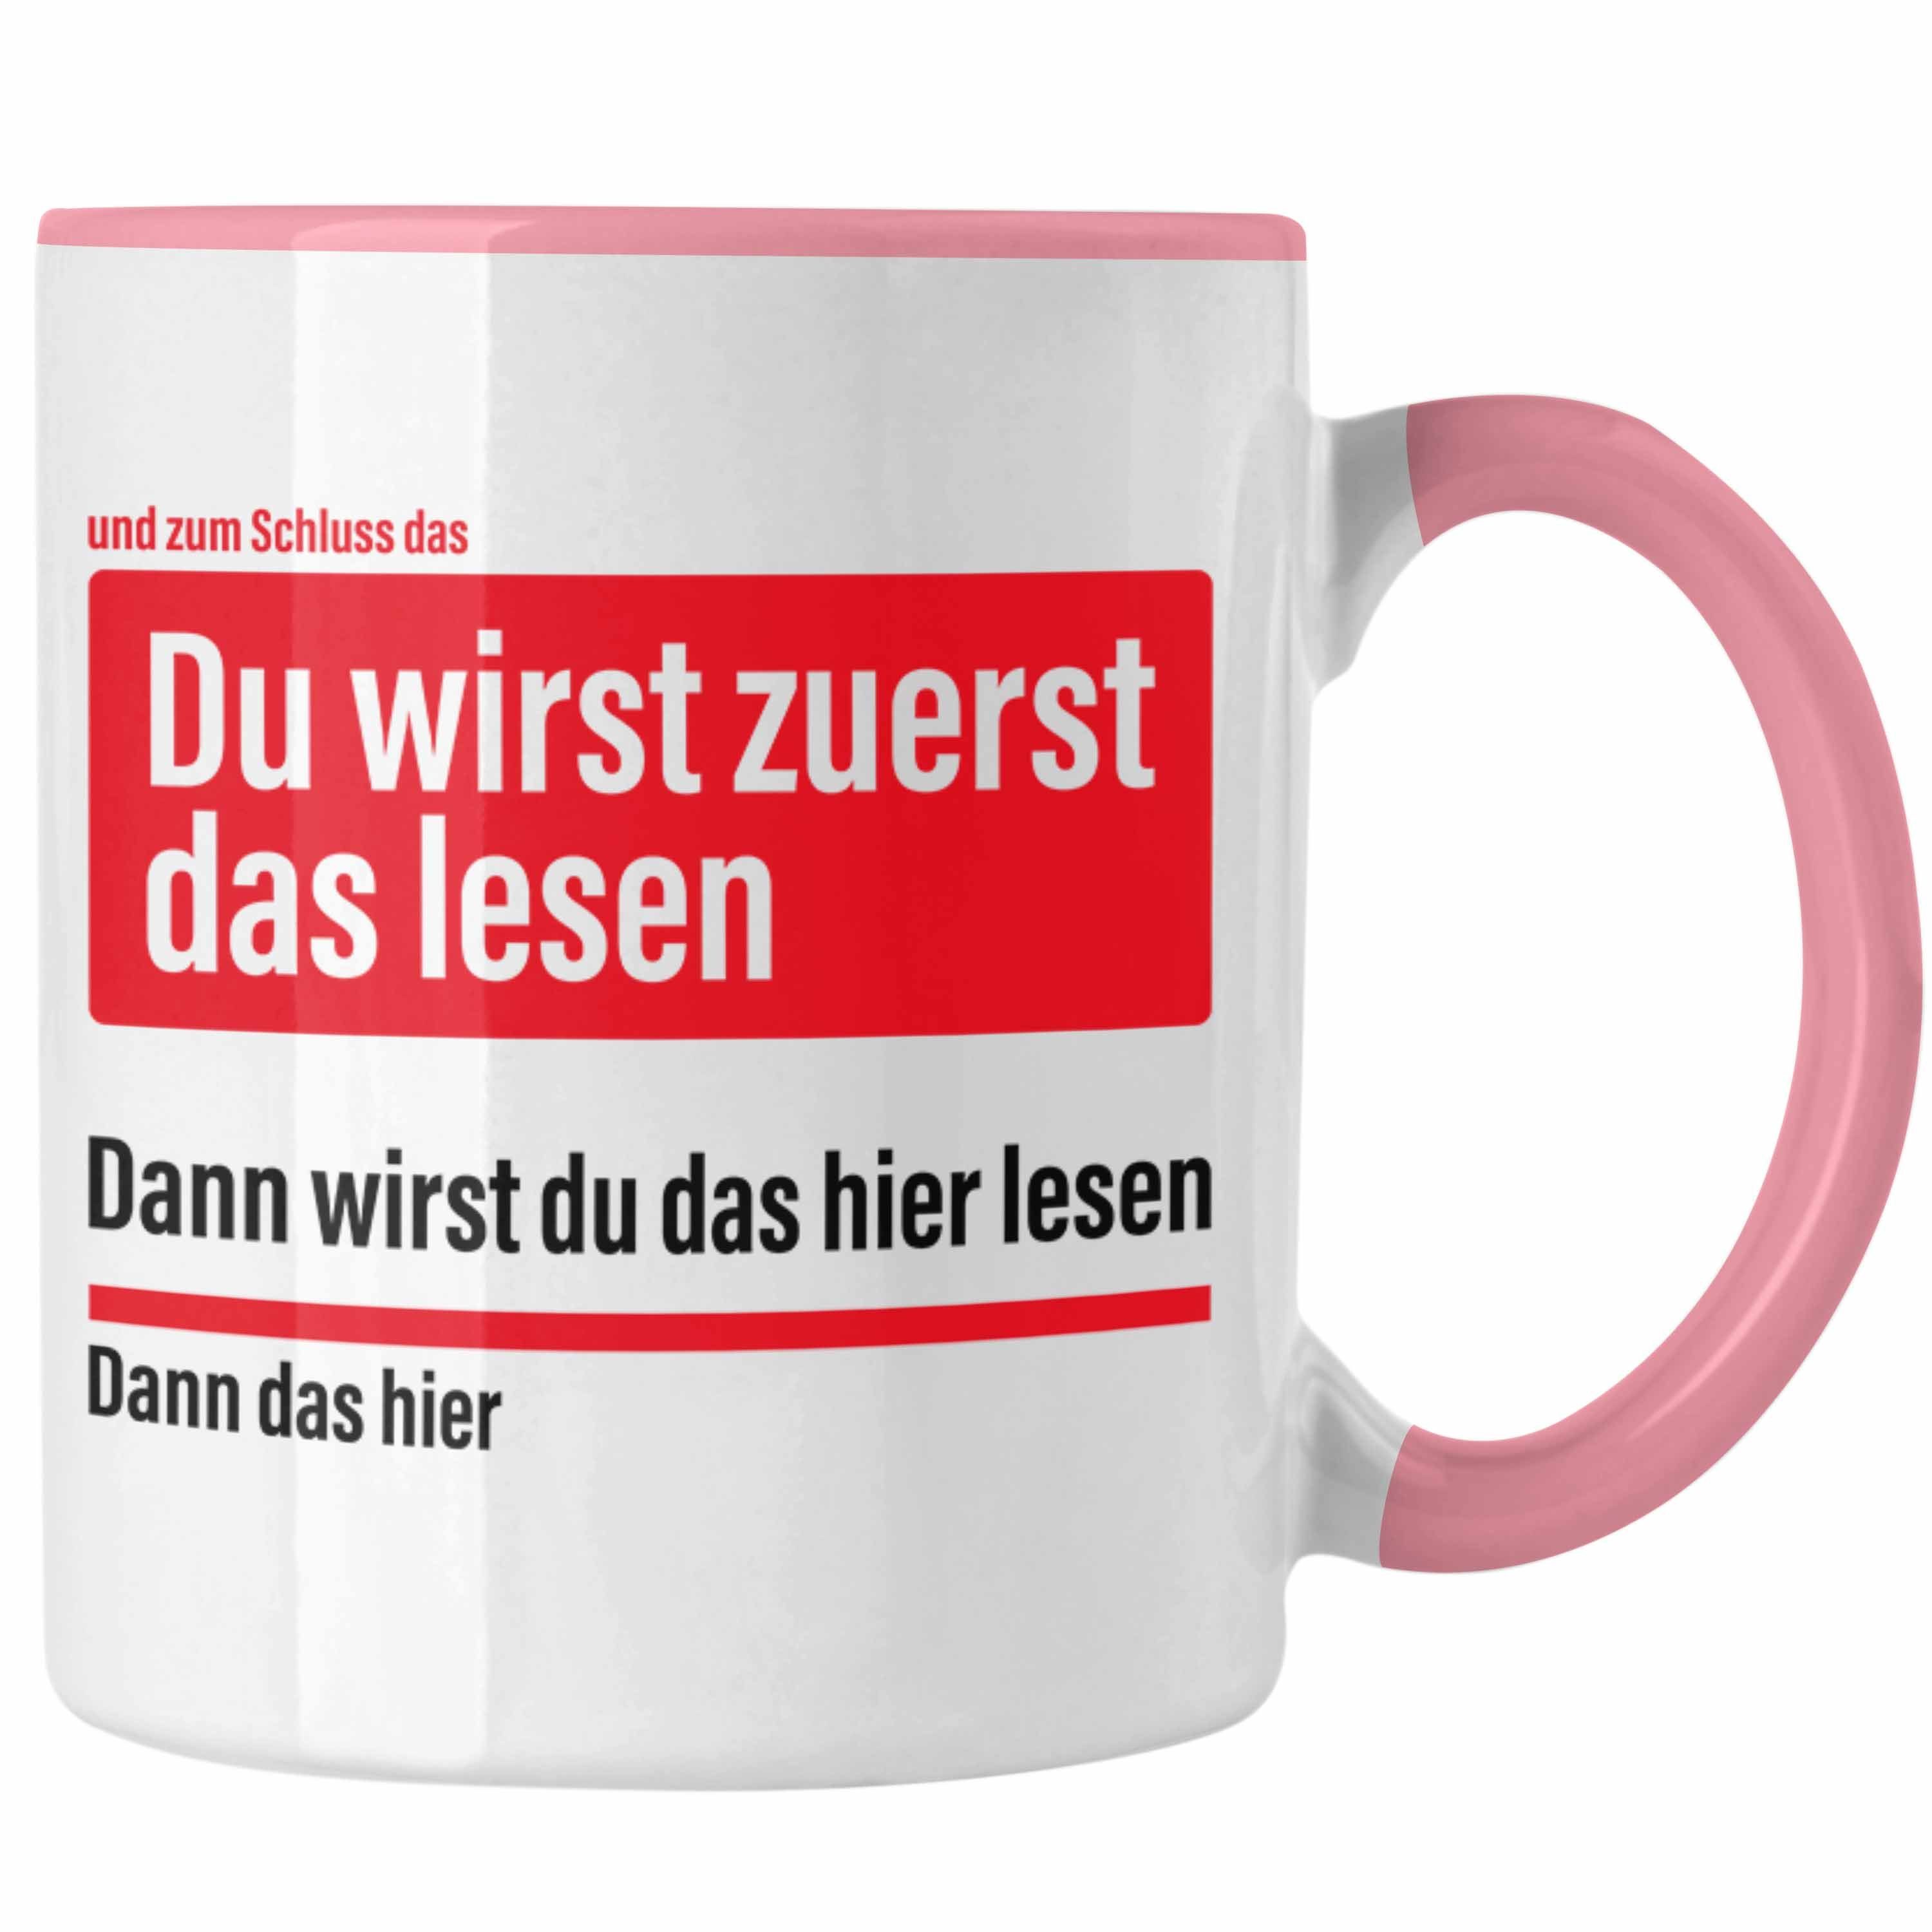 Trendation Tasse Trendation Rosa Kaffeetasse Becher Das Du Lustige Tasse Zuerst Wirst - Lesen